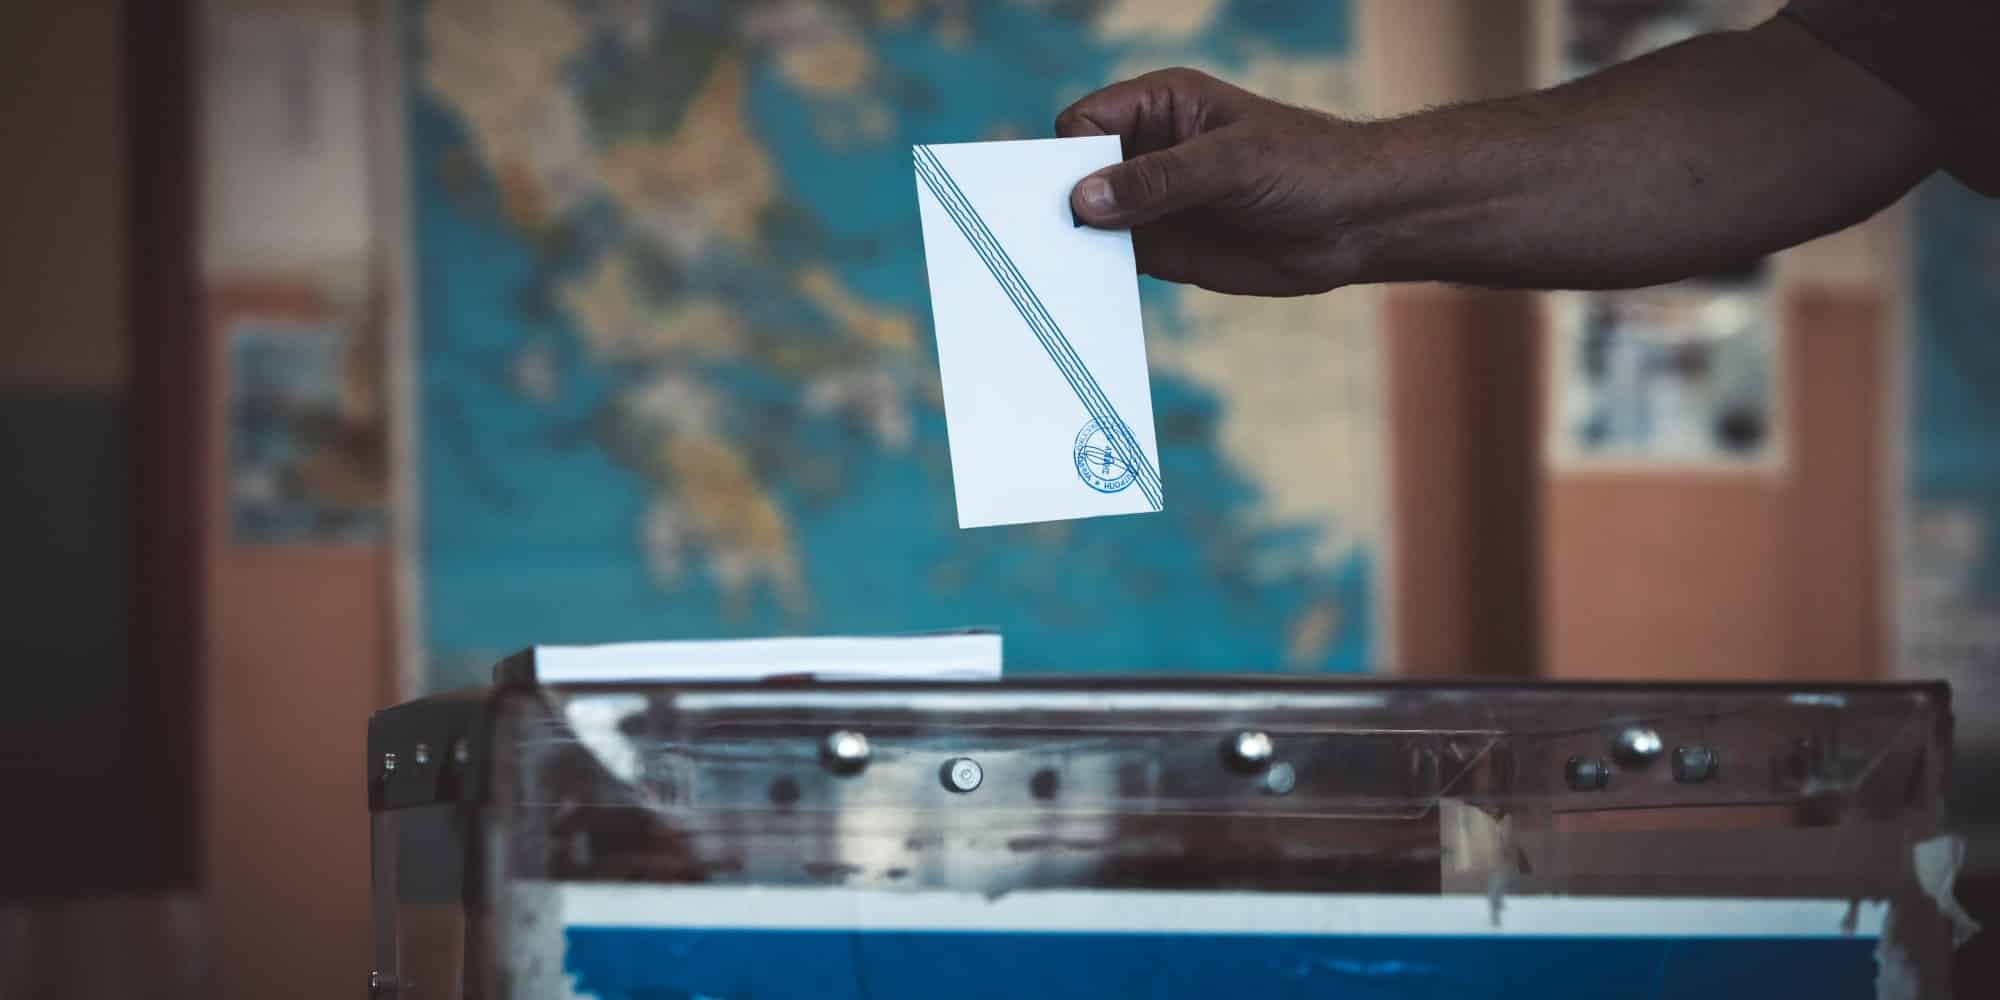 Φάκελοι σε κάλπη σε εκλογές - Ευρωεκλογές